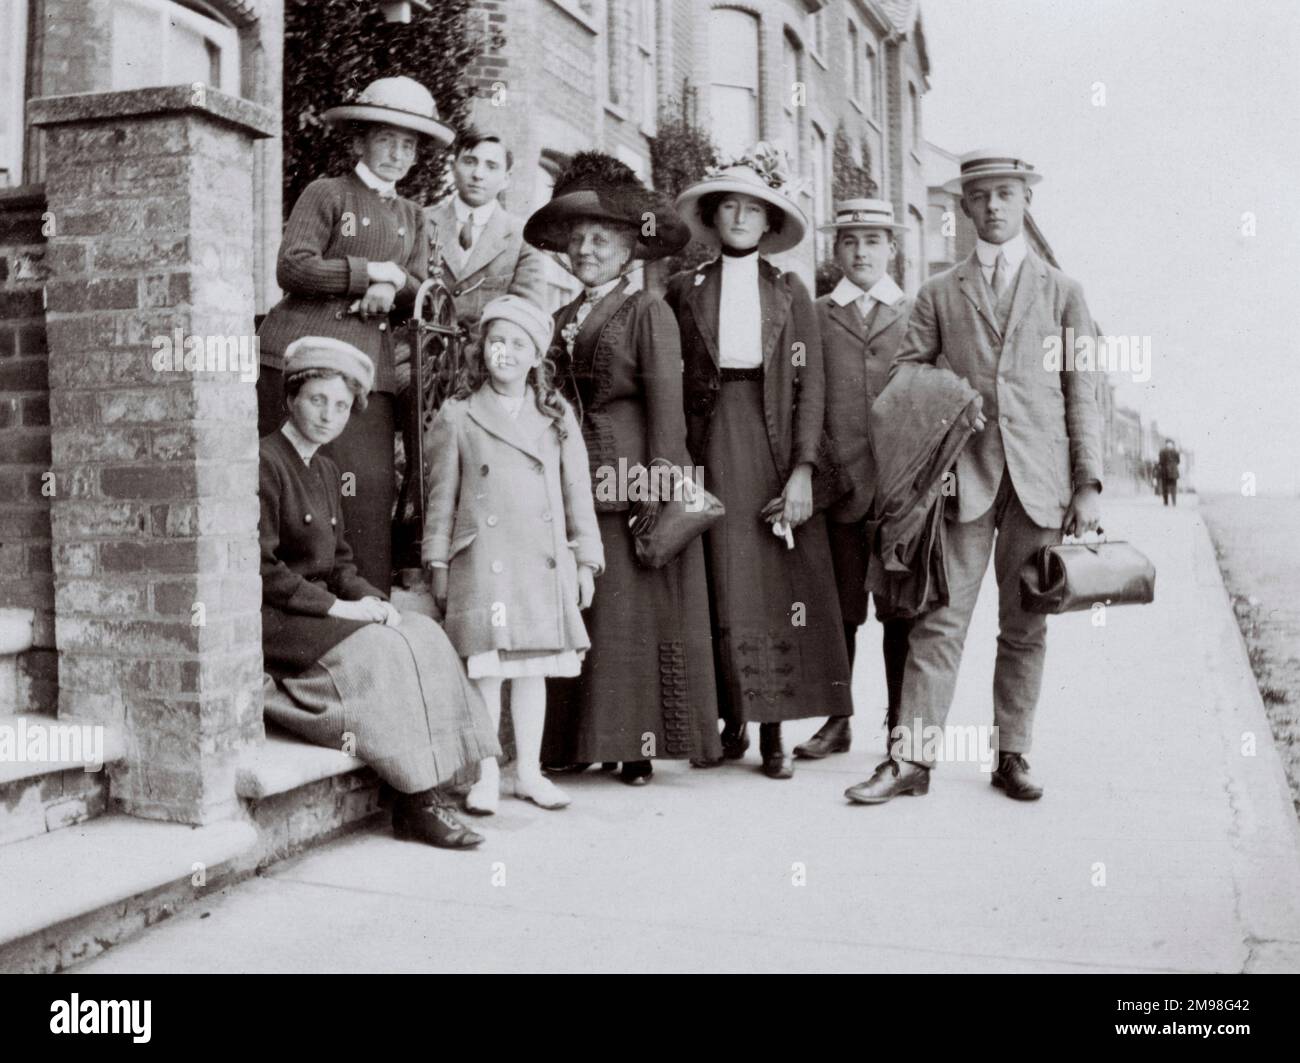 Der letzte Tag der Feiertage, sagte Auf Wiedersehen, Southwold, Suffolk -- Mitglieder der Auerbacher Familie (Albert, Harold, Lucy und Violet) und Mitglieder der Cattley Familie, September 1912. Stockfoto